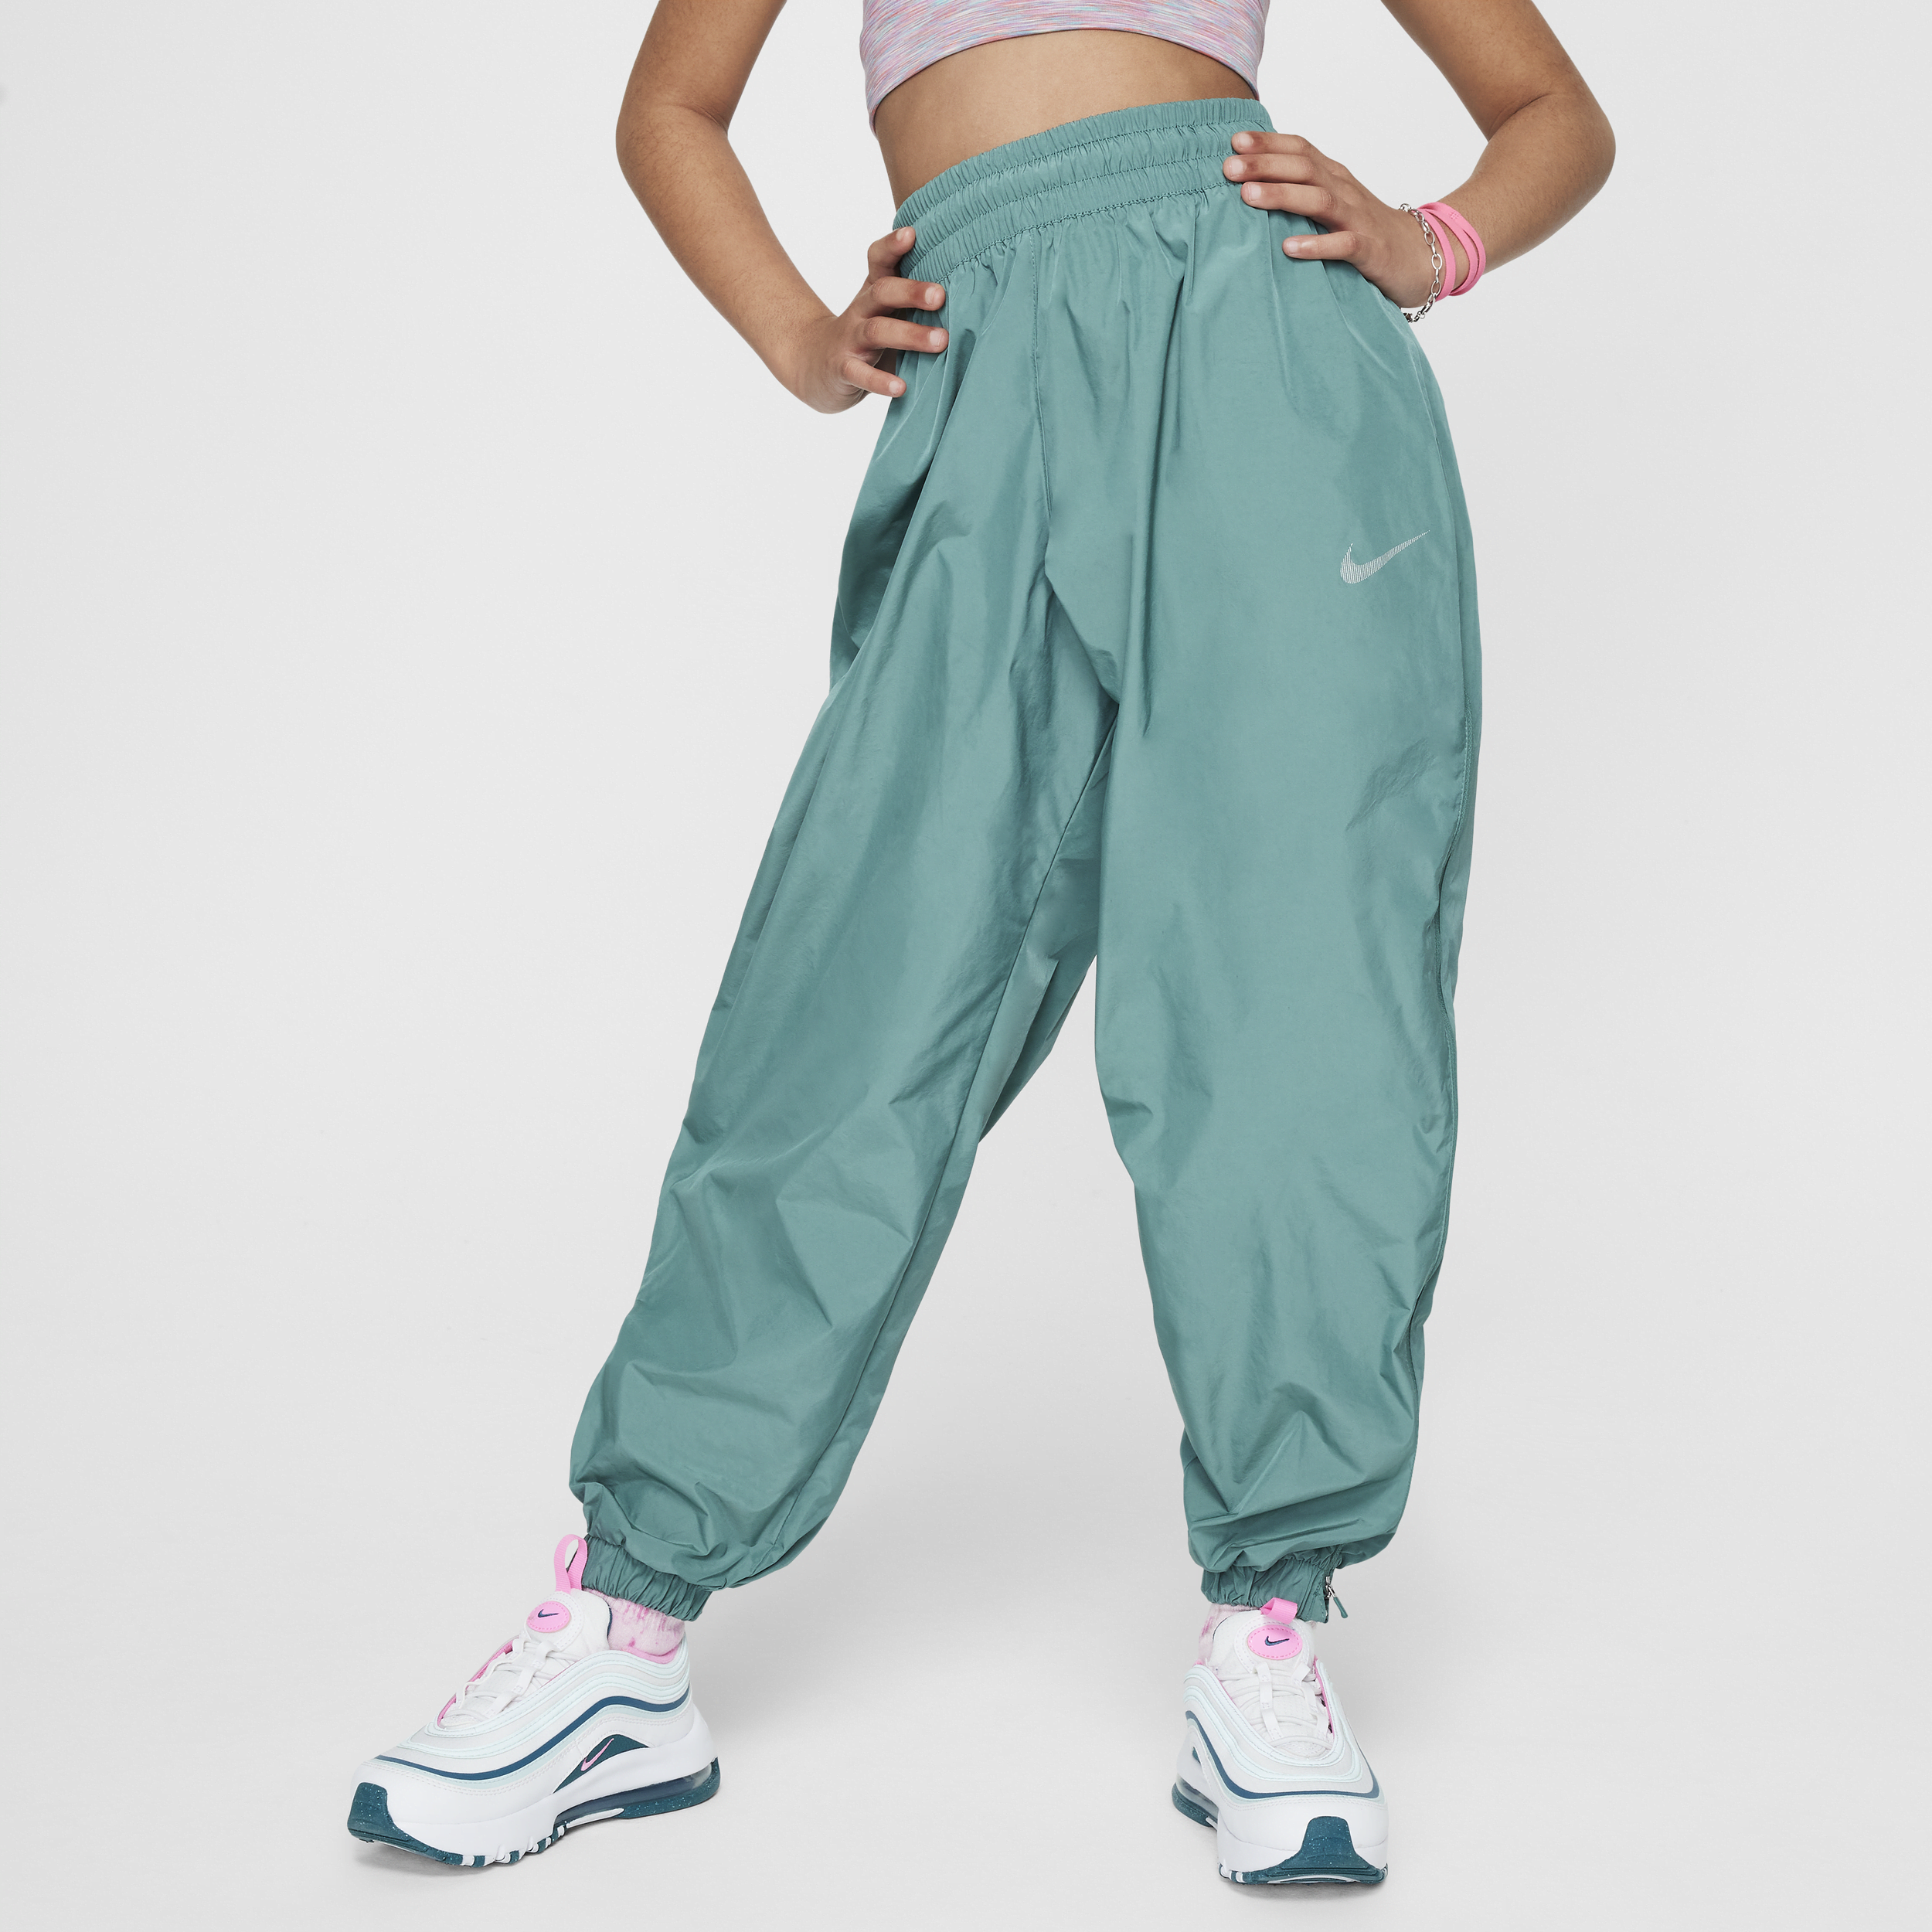 Vævede Nike Sportswear-bukser til større børn (piger) - grøn